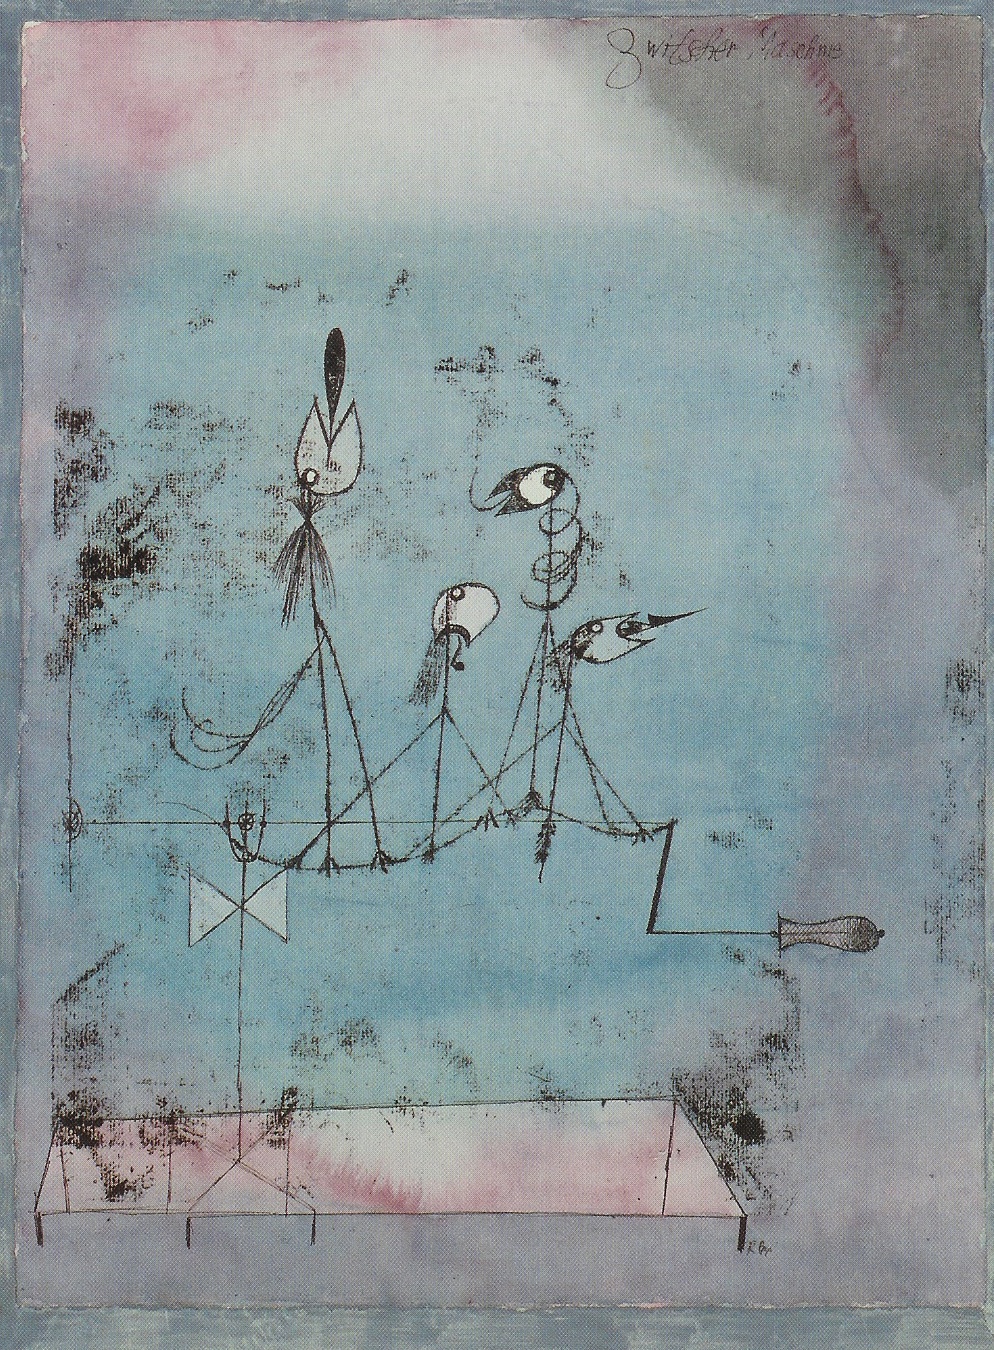 Paul Klee "Twittering Machine" (1922)